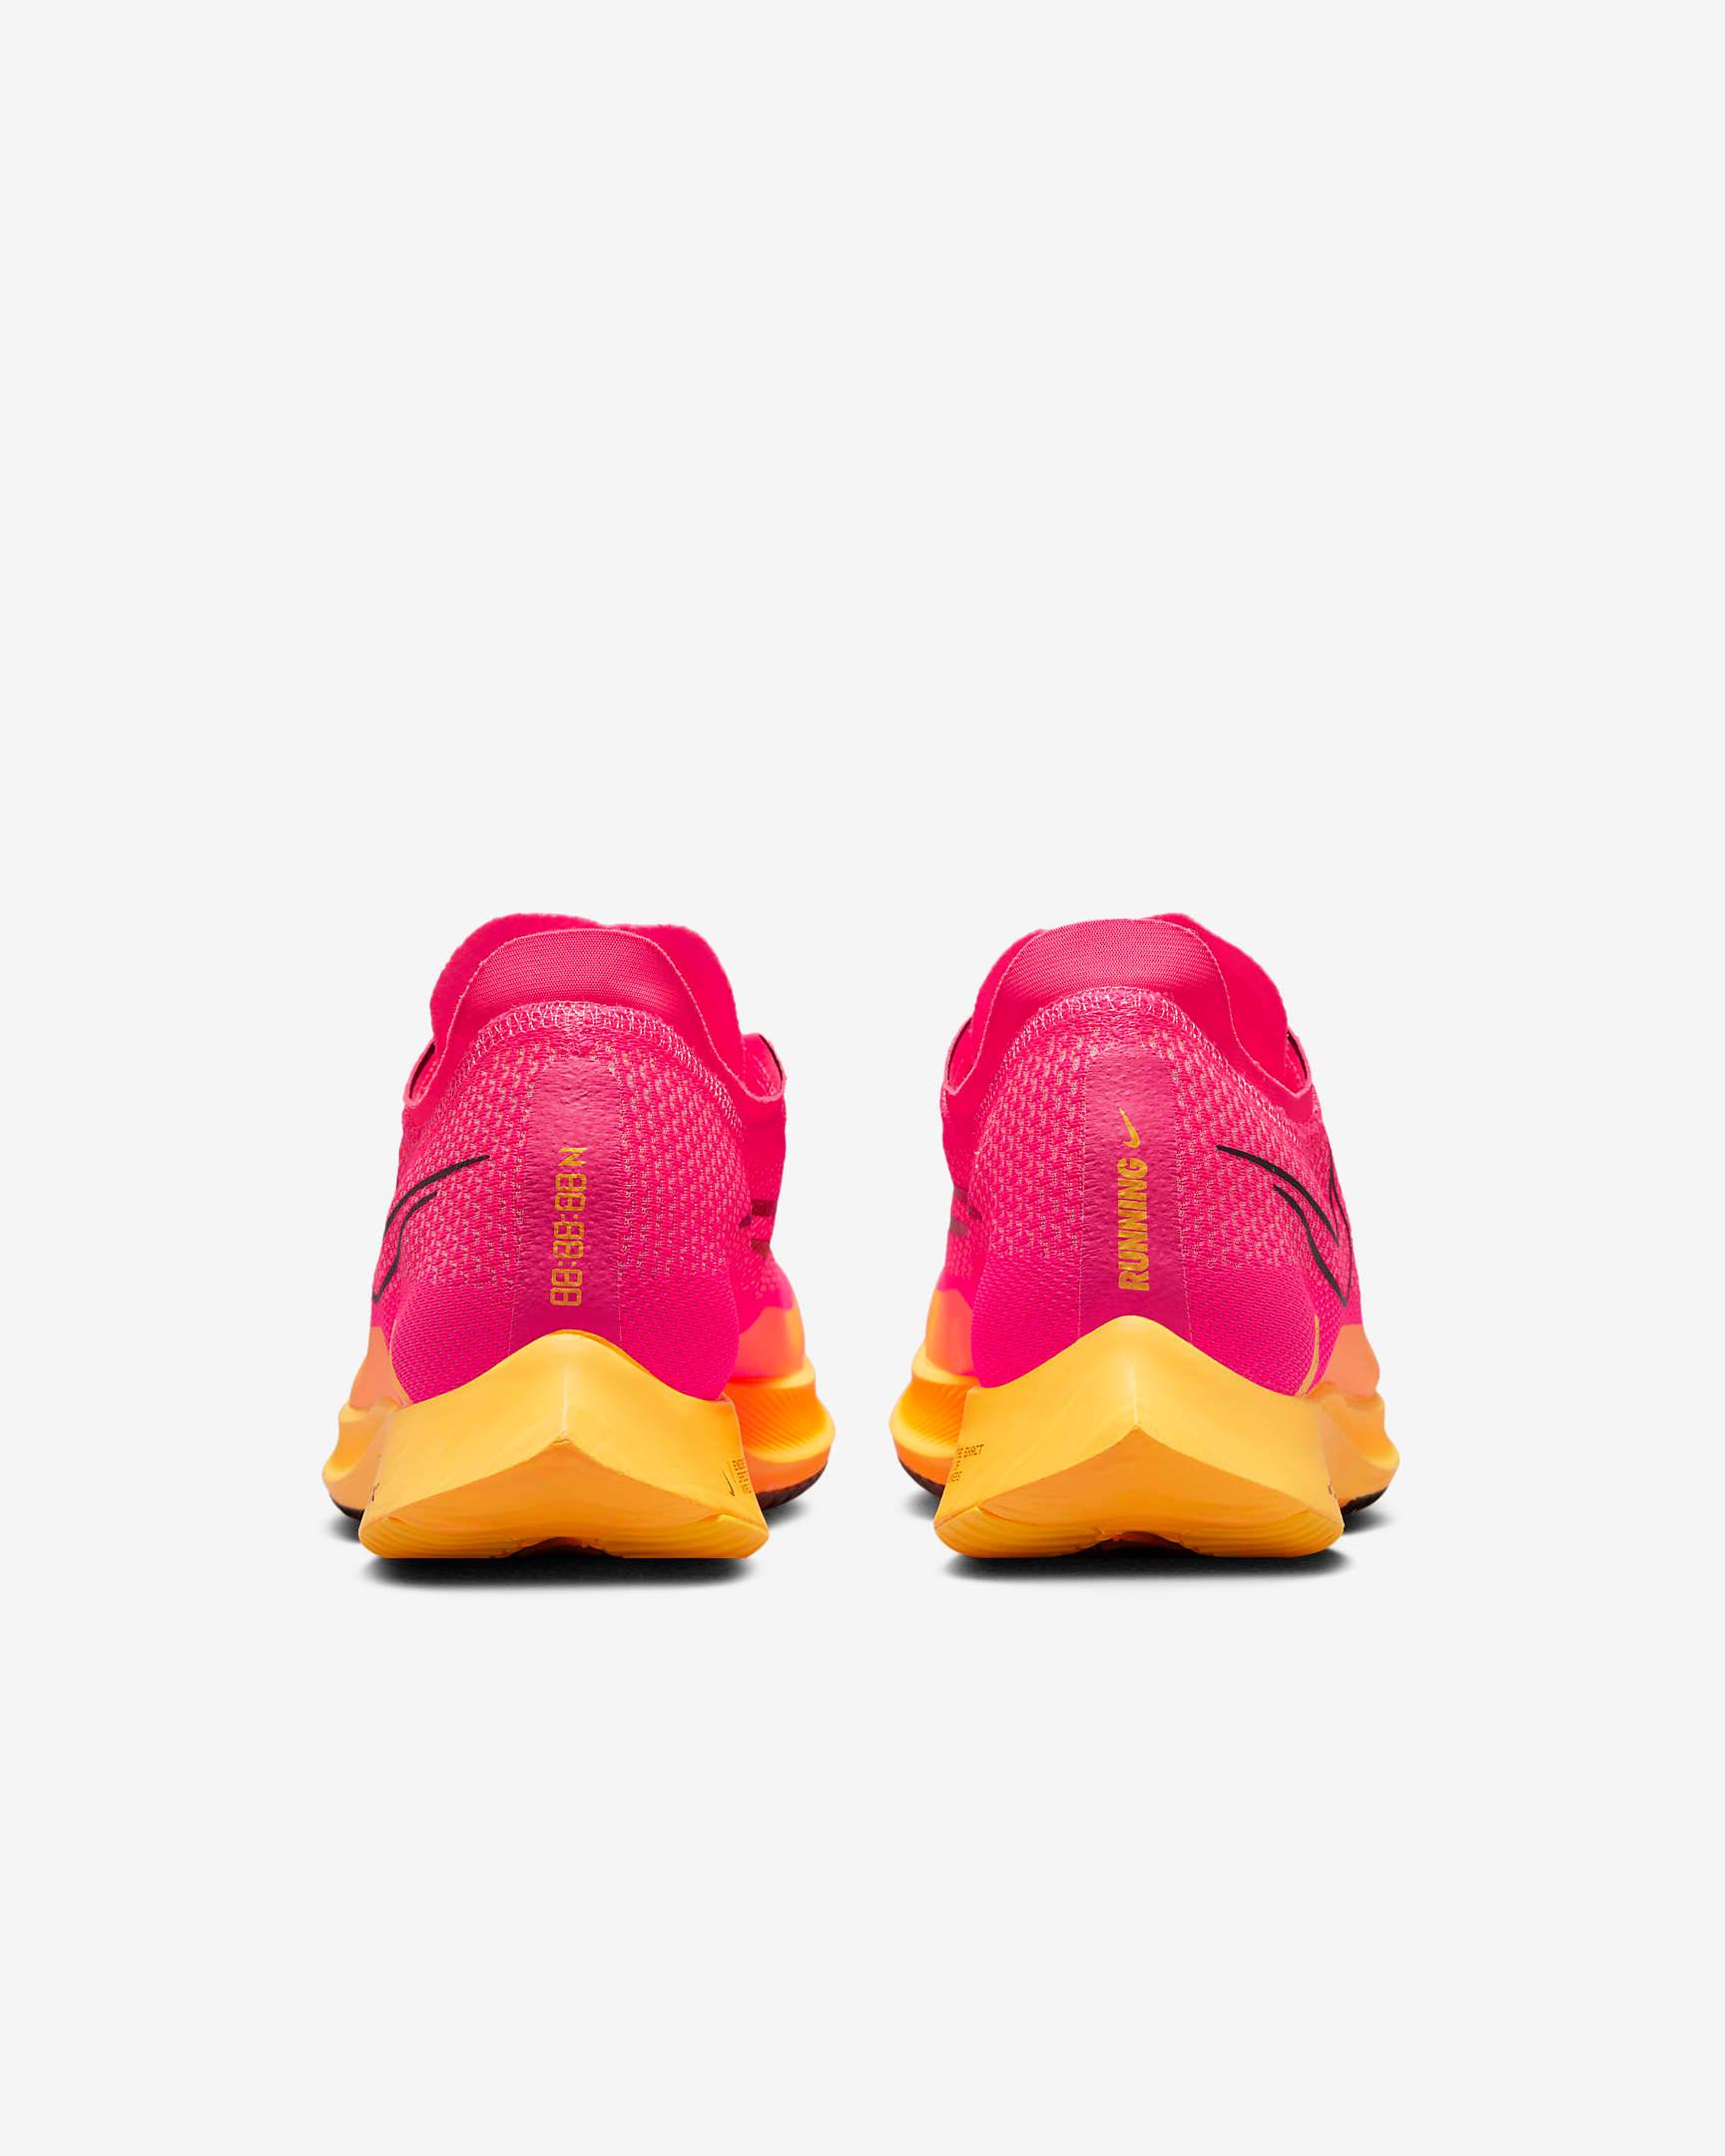 Giày Nike Streakfly Road Racing Shoes #Hyper Pink - Kallos Vietnam